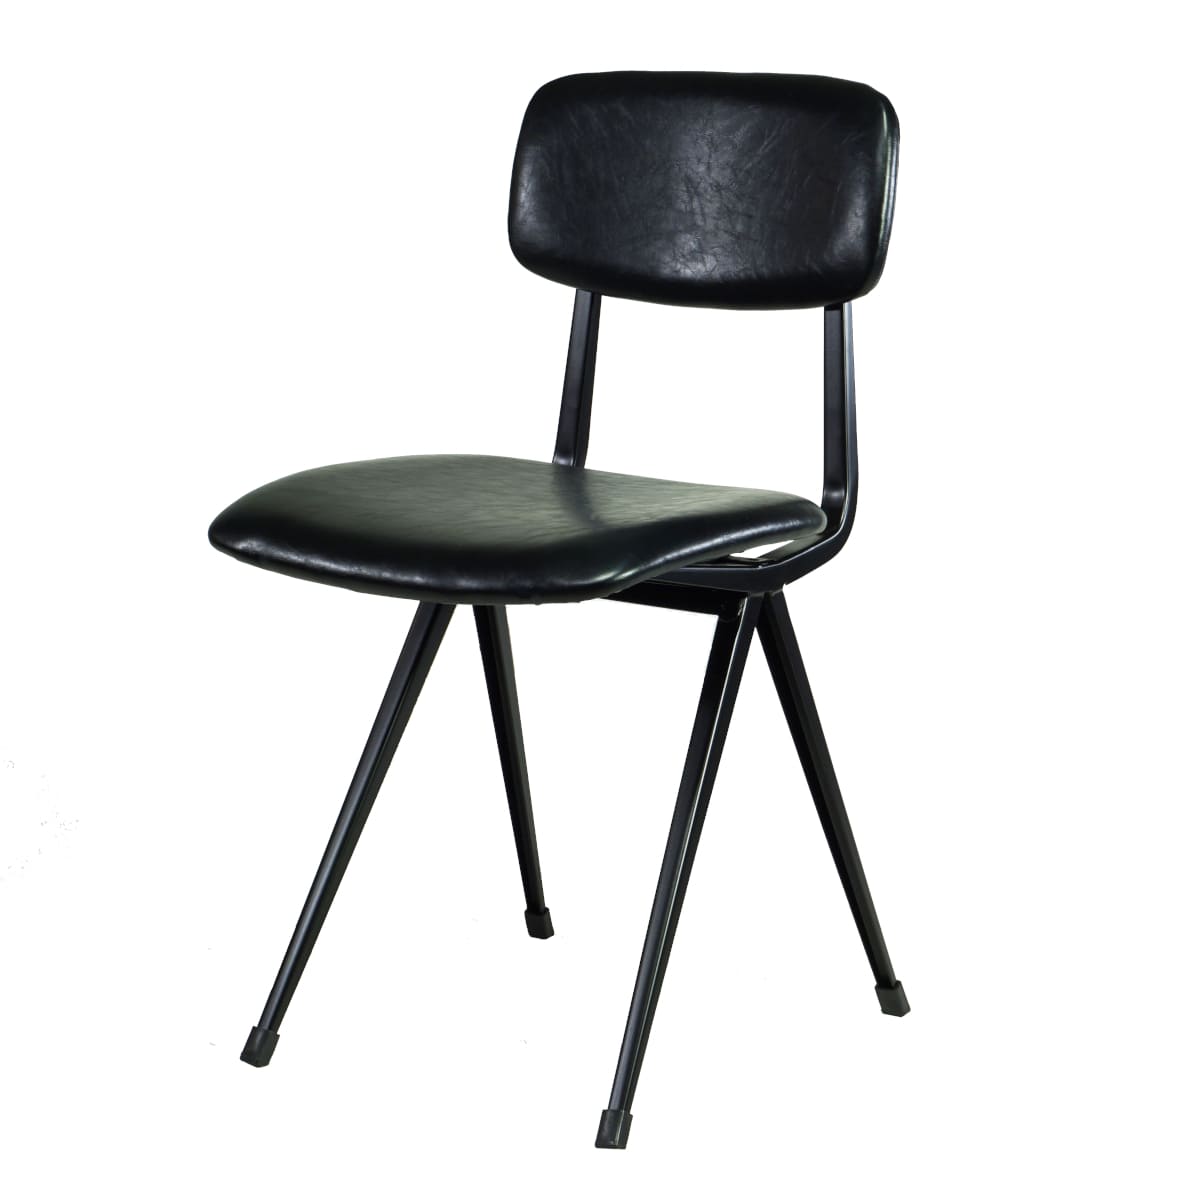 schwarz 4 x gepolstert Metall zusammenfaltbar Stühle Parteien Büros Schule 